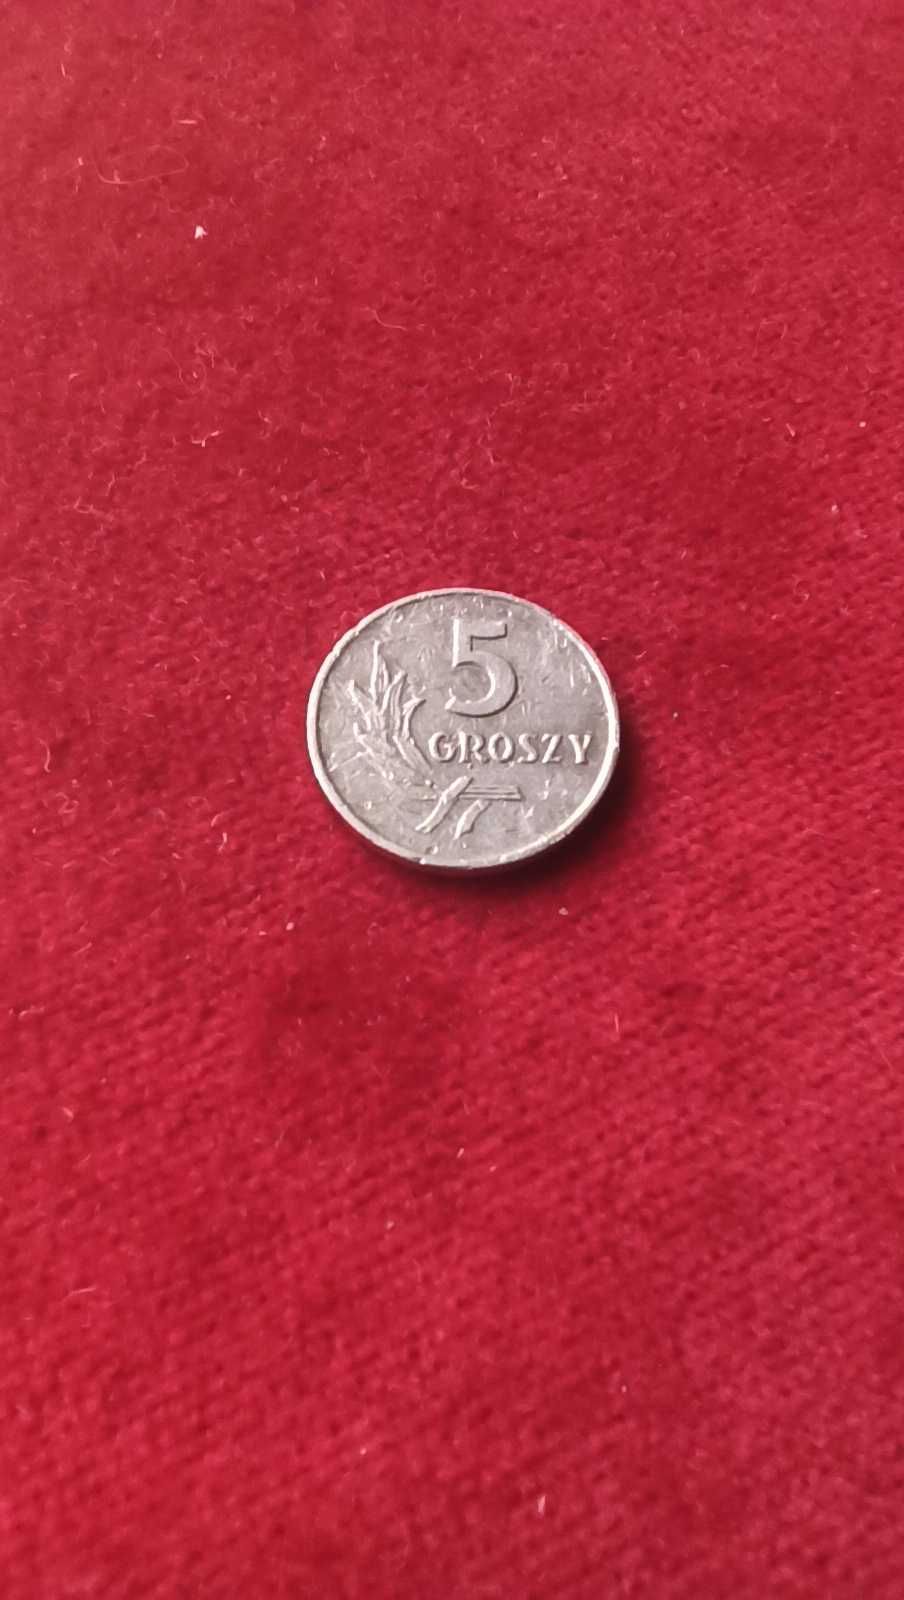 PRL, Moneta 5 groszy 1960r. / Najrzadsza! (2)